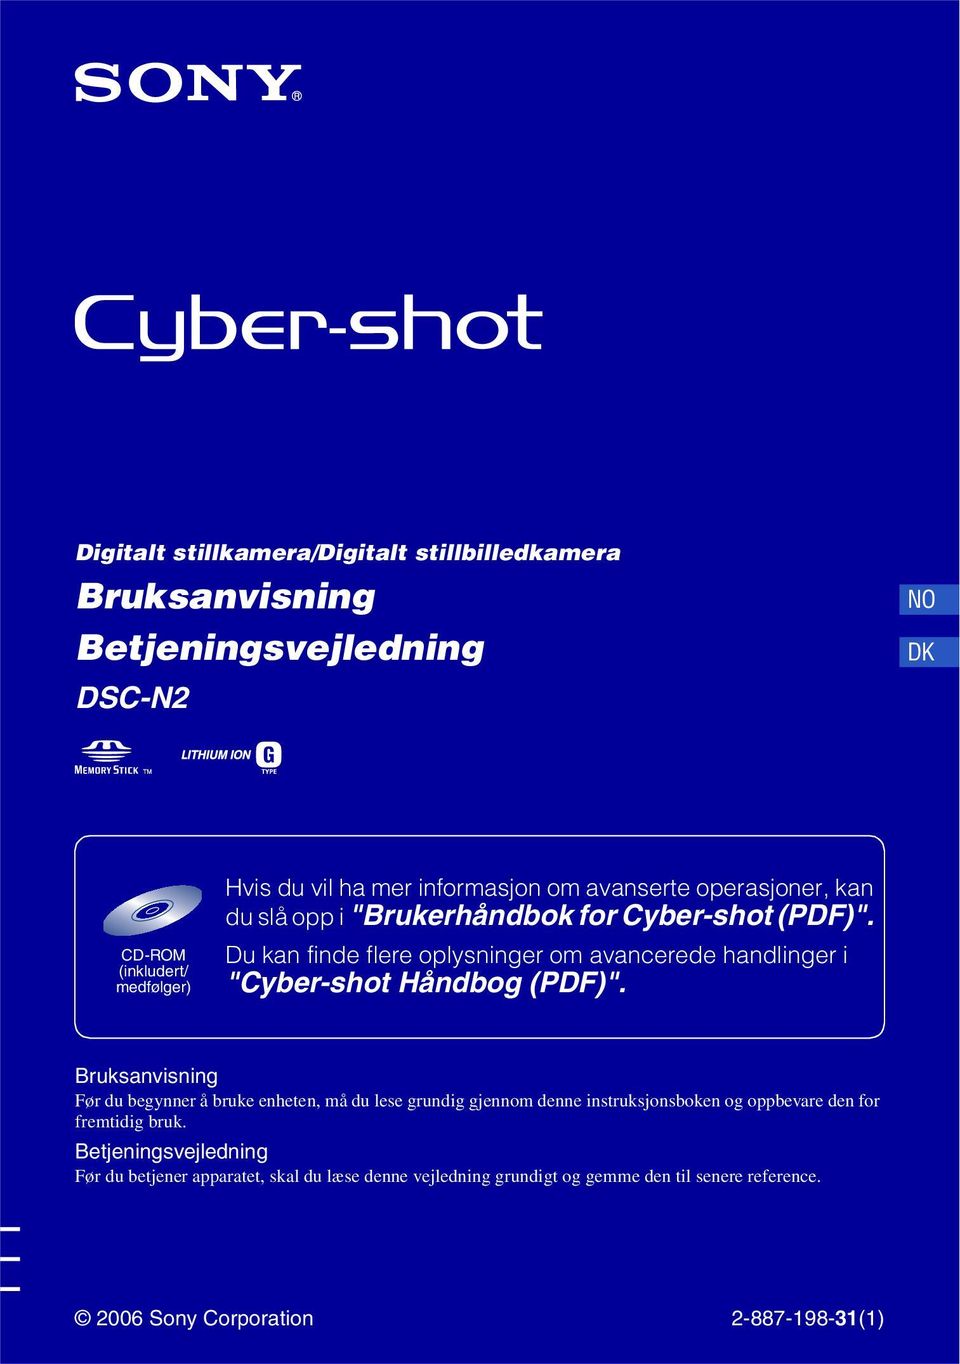 CD-ROM (inkludert/ medfølger) Du kan finde flere oplysninger om avancerede handlinger i "Cyber-shot Håndbog (PDF)".